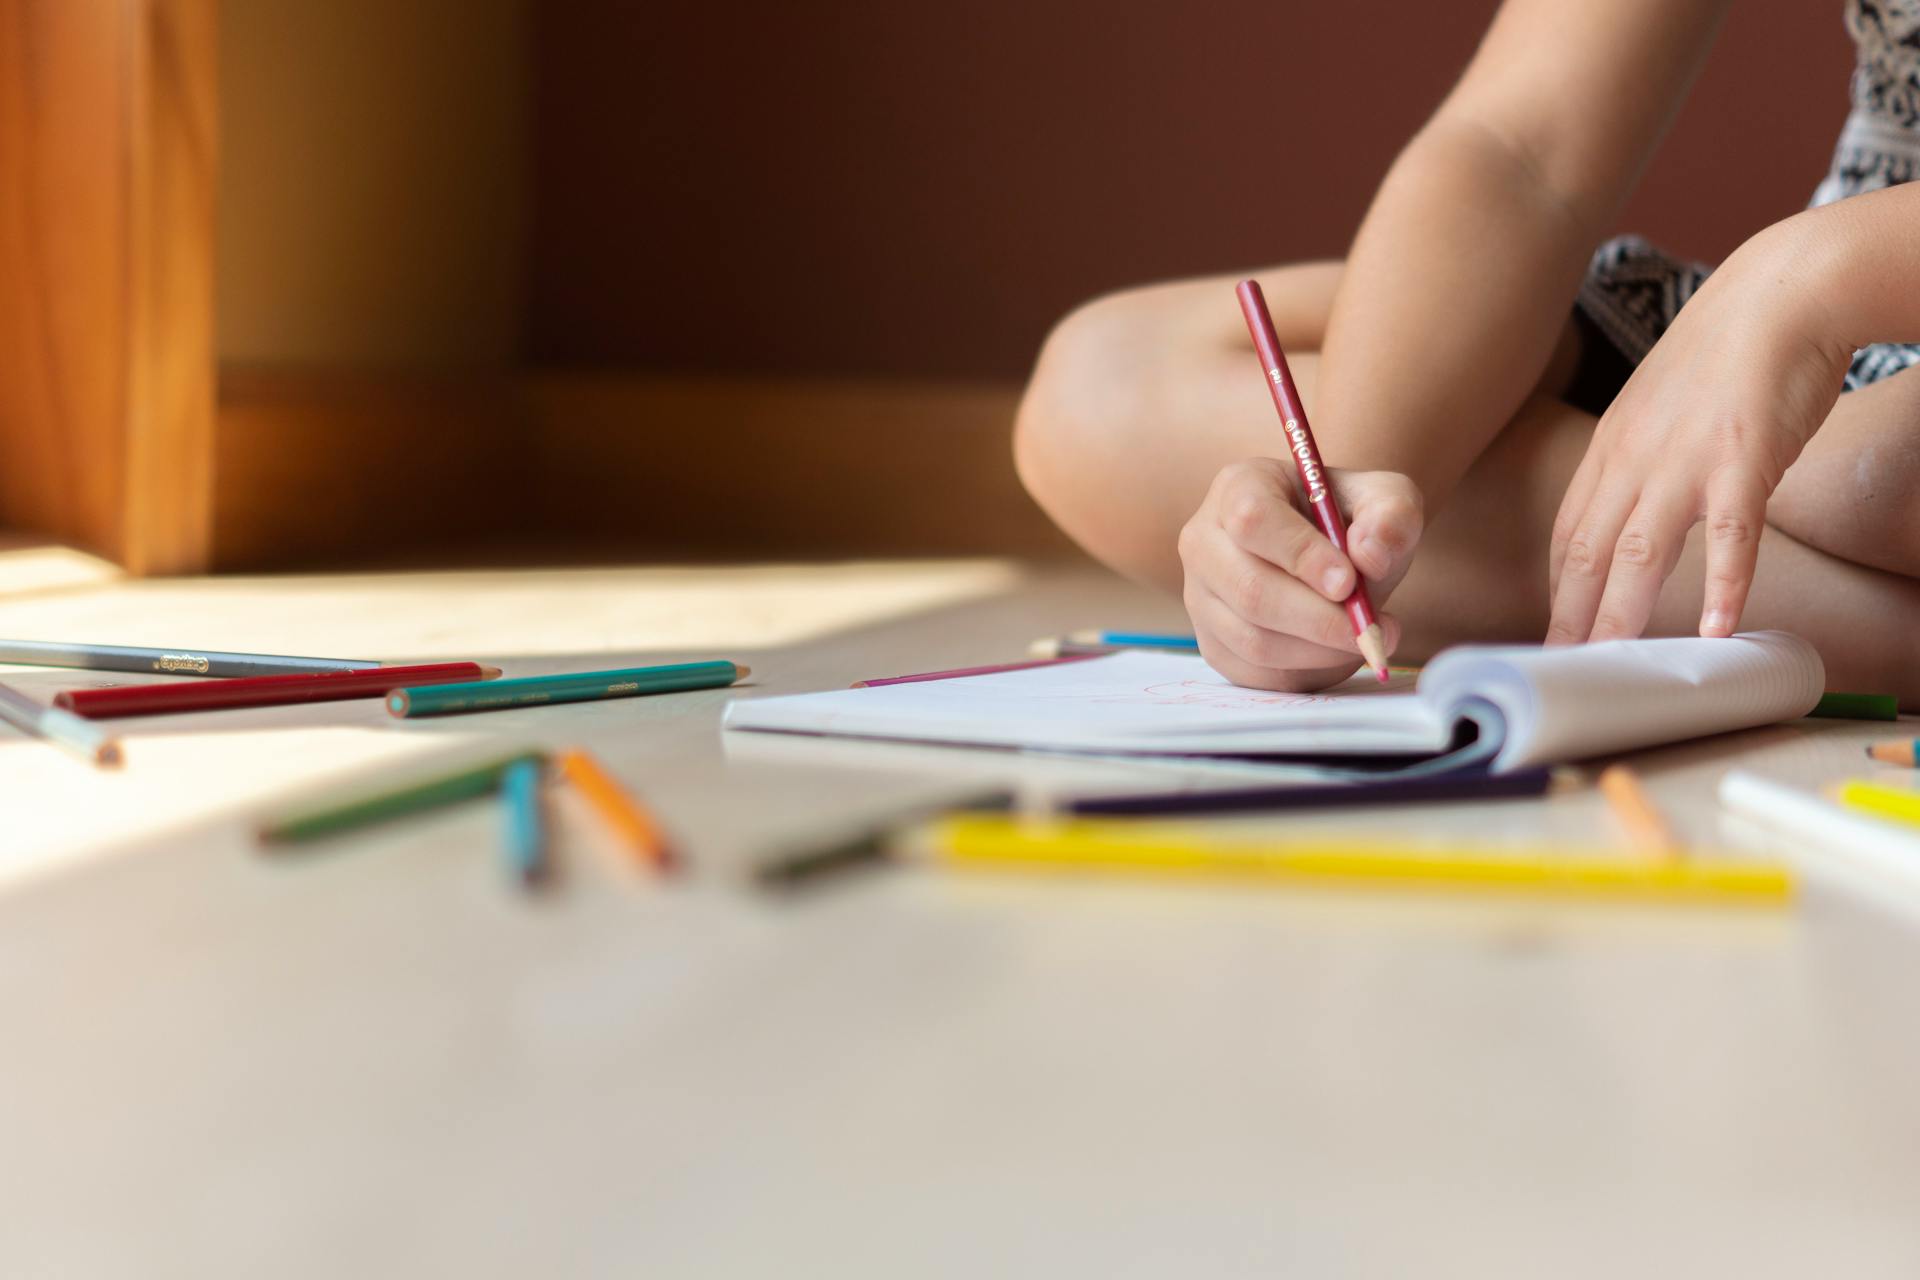 Ein Kind sitzt auf dem Boden und zeichnet | Quelle: Pexels